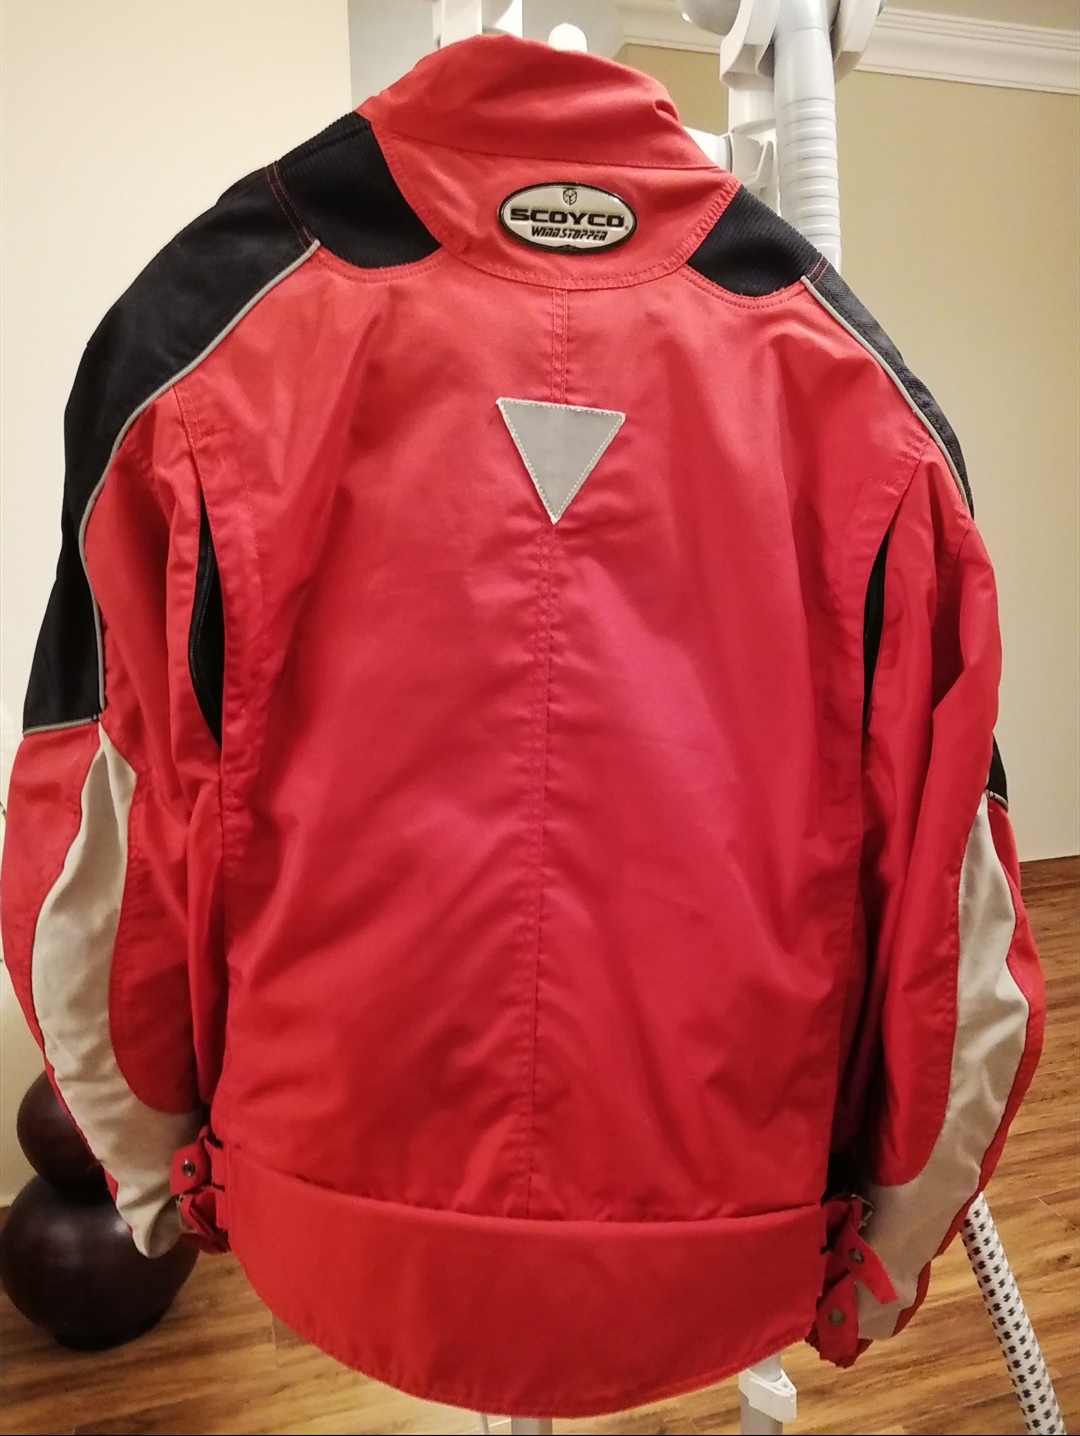 Scoyco  - Jacket - Safety jacket  